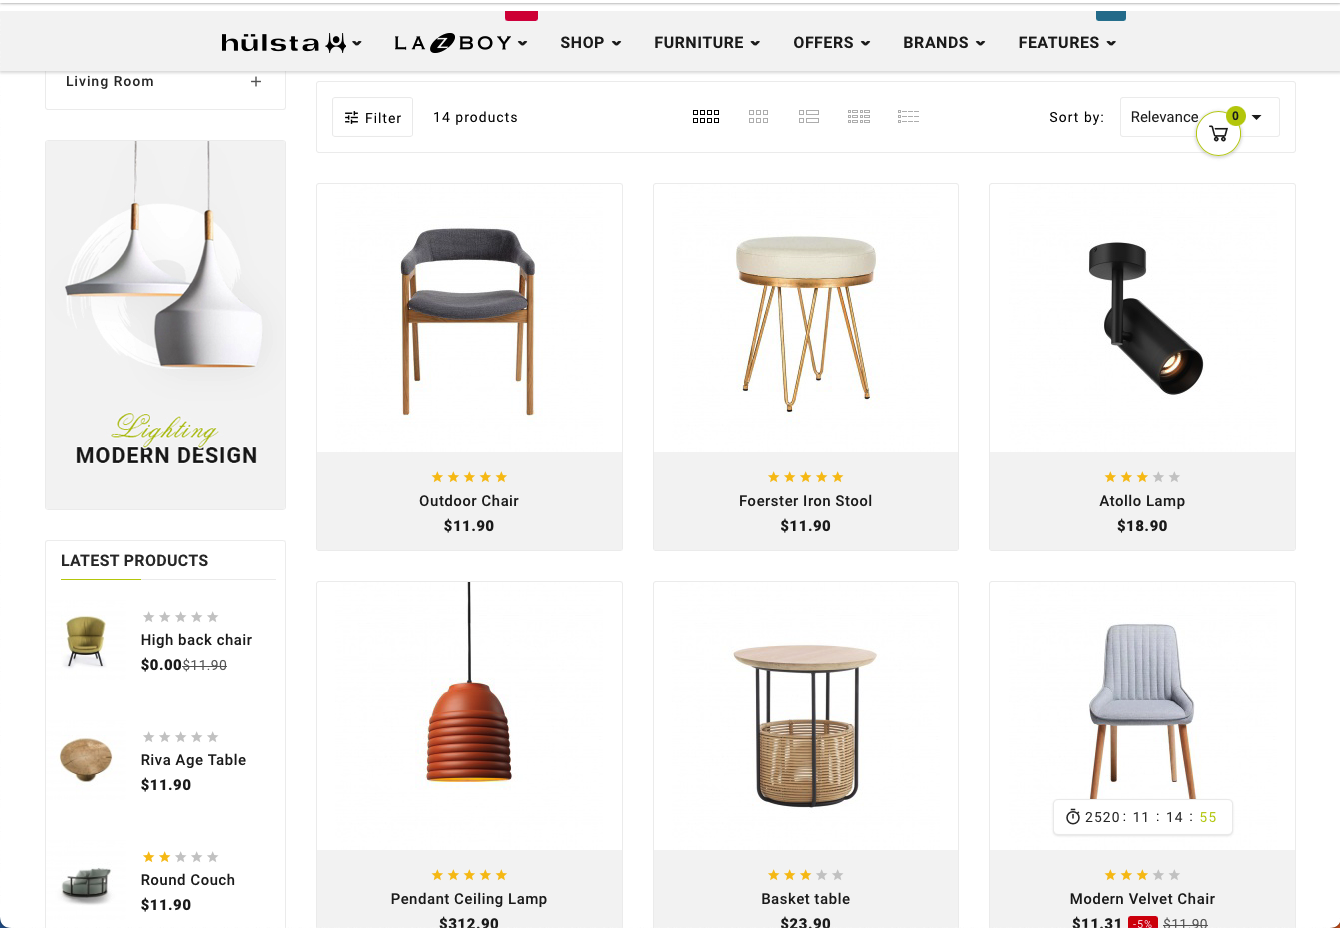 Drexel Mega - Dřevěný nábytek, Šablona víceúčelového obchodu pro stylový nákup